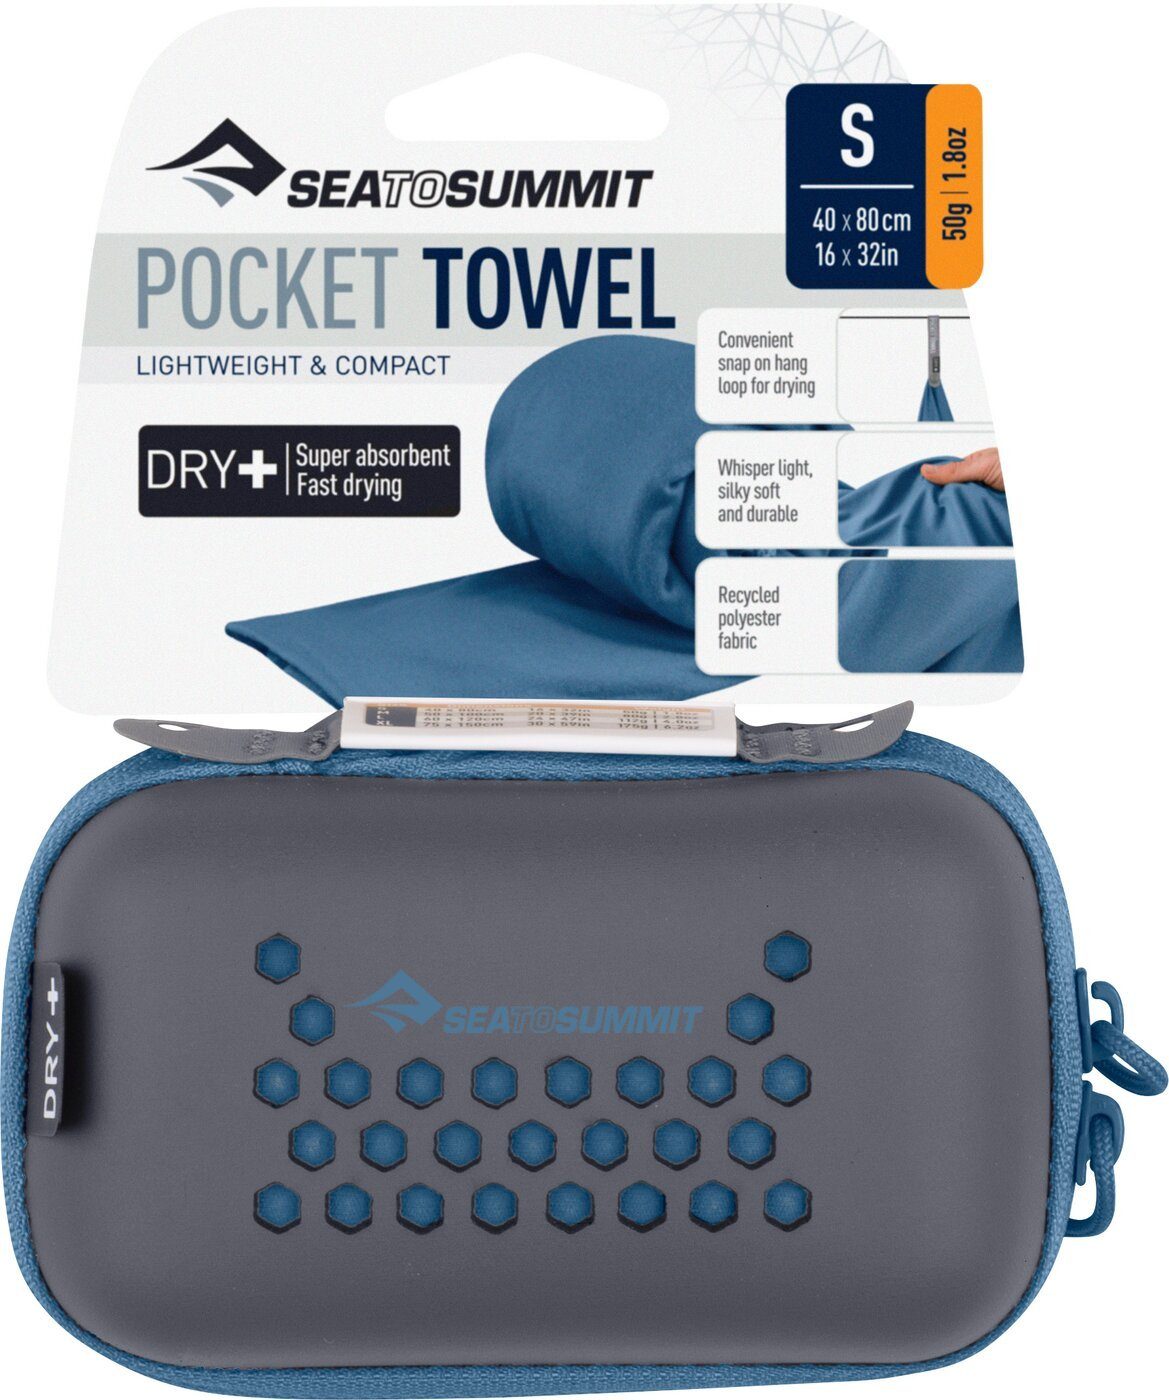 Towel MOONLIGHT sea Pocket summit Handtuch to